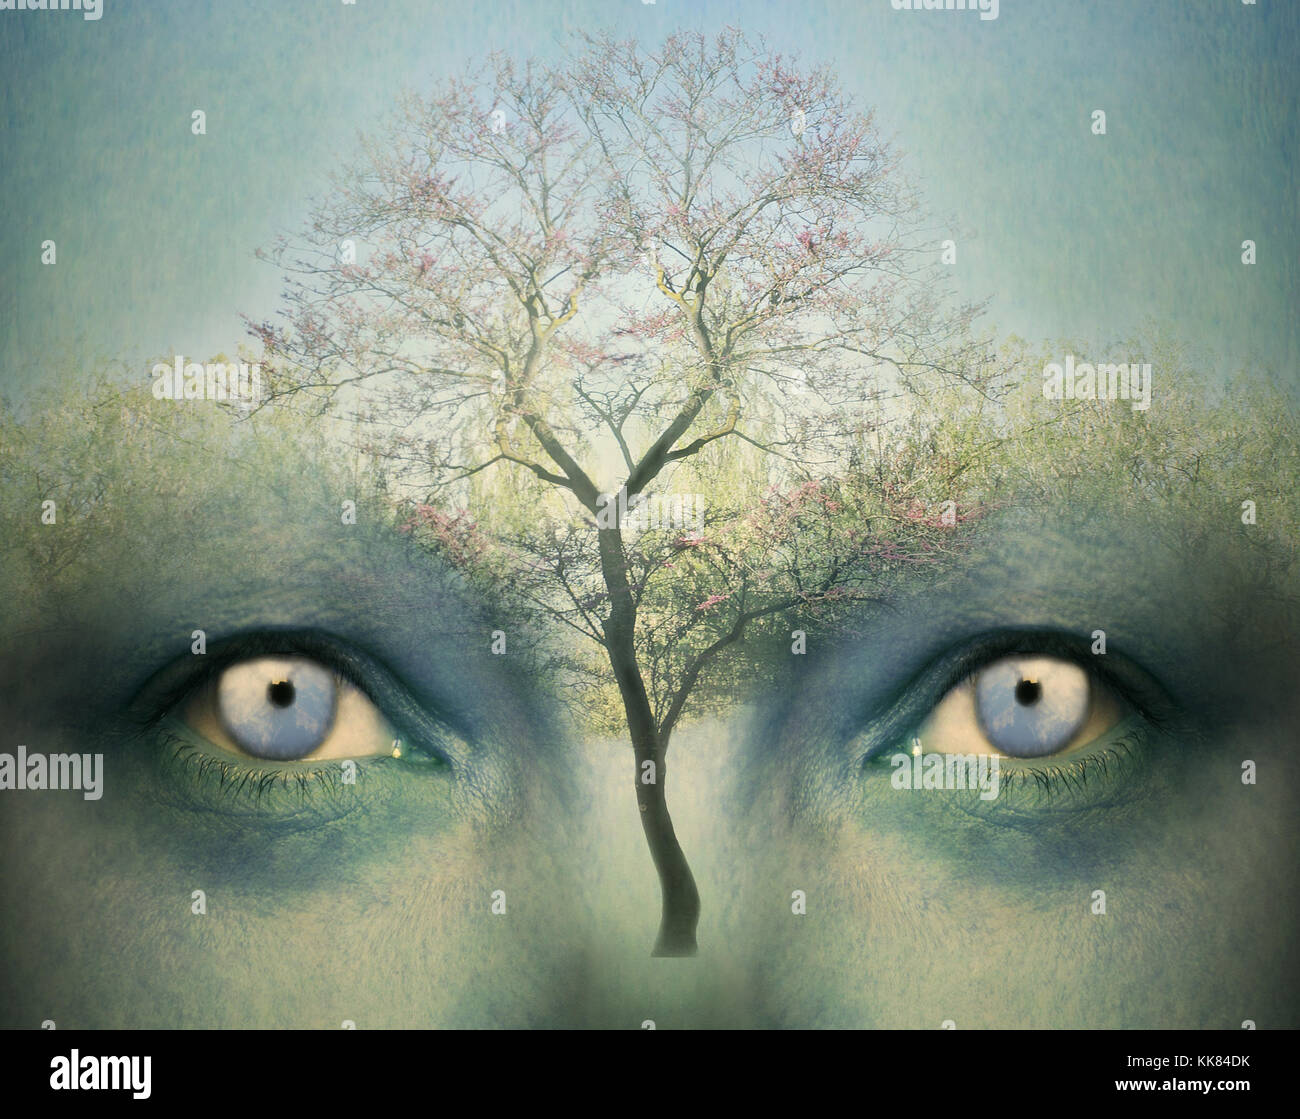 Bella fantasia artistica che rappresenta lo sfondo a due occhi umani e un albero Foto Stock